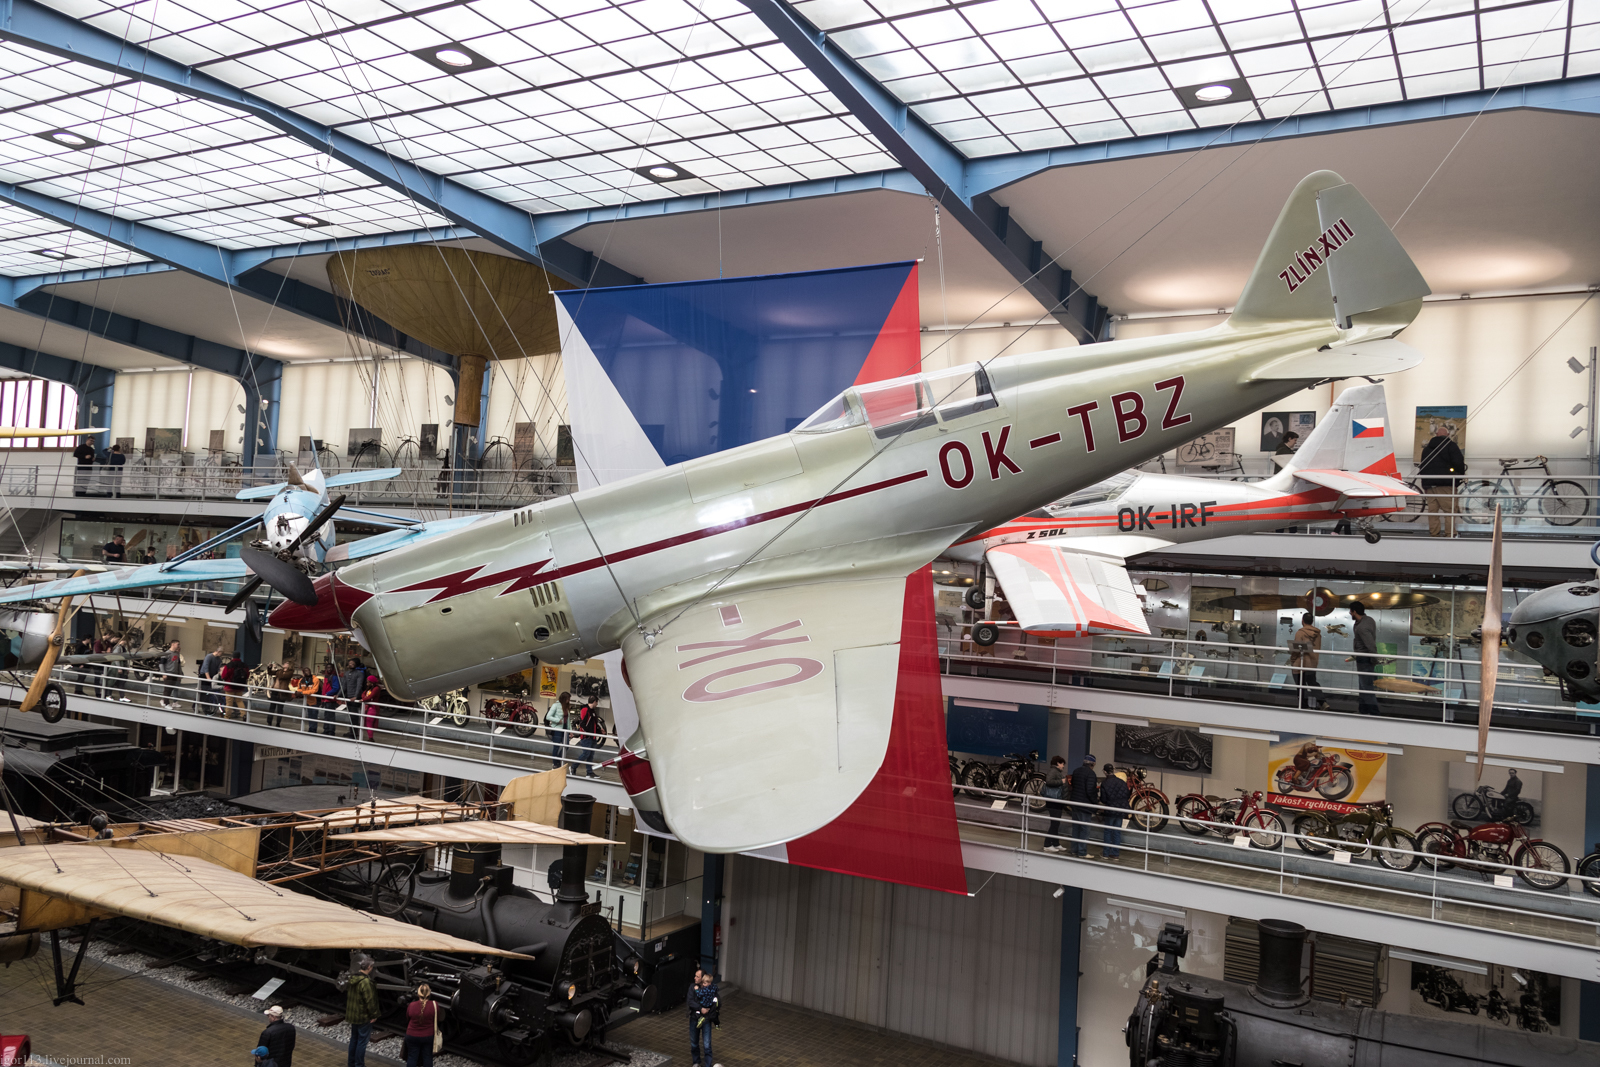 Технический музей Праги: чешский легкий самолет Zlin Z-13.